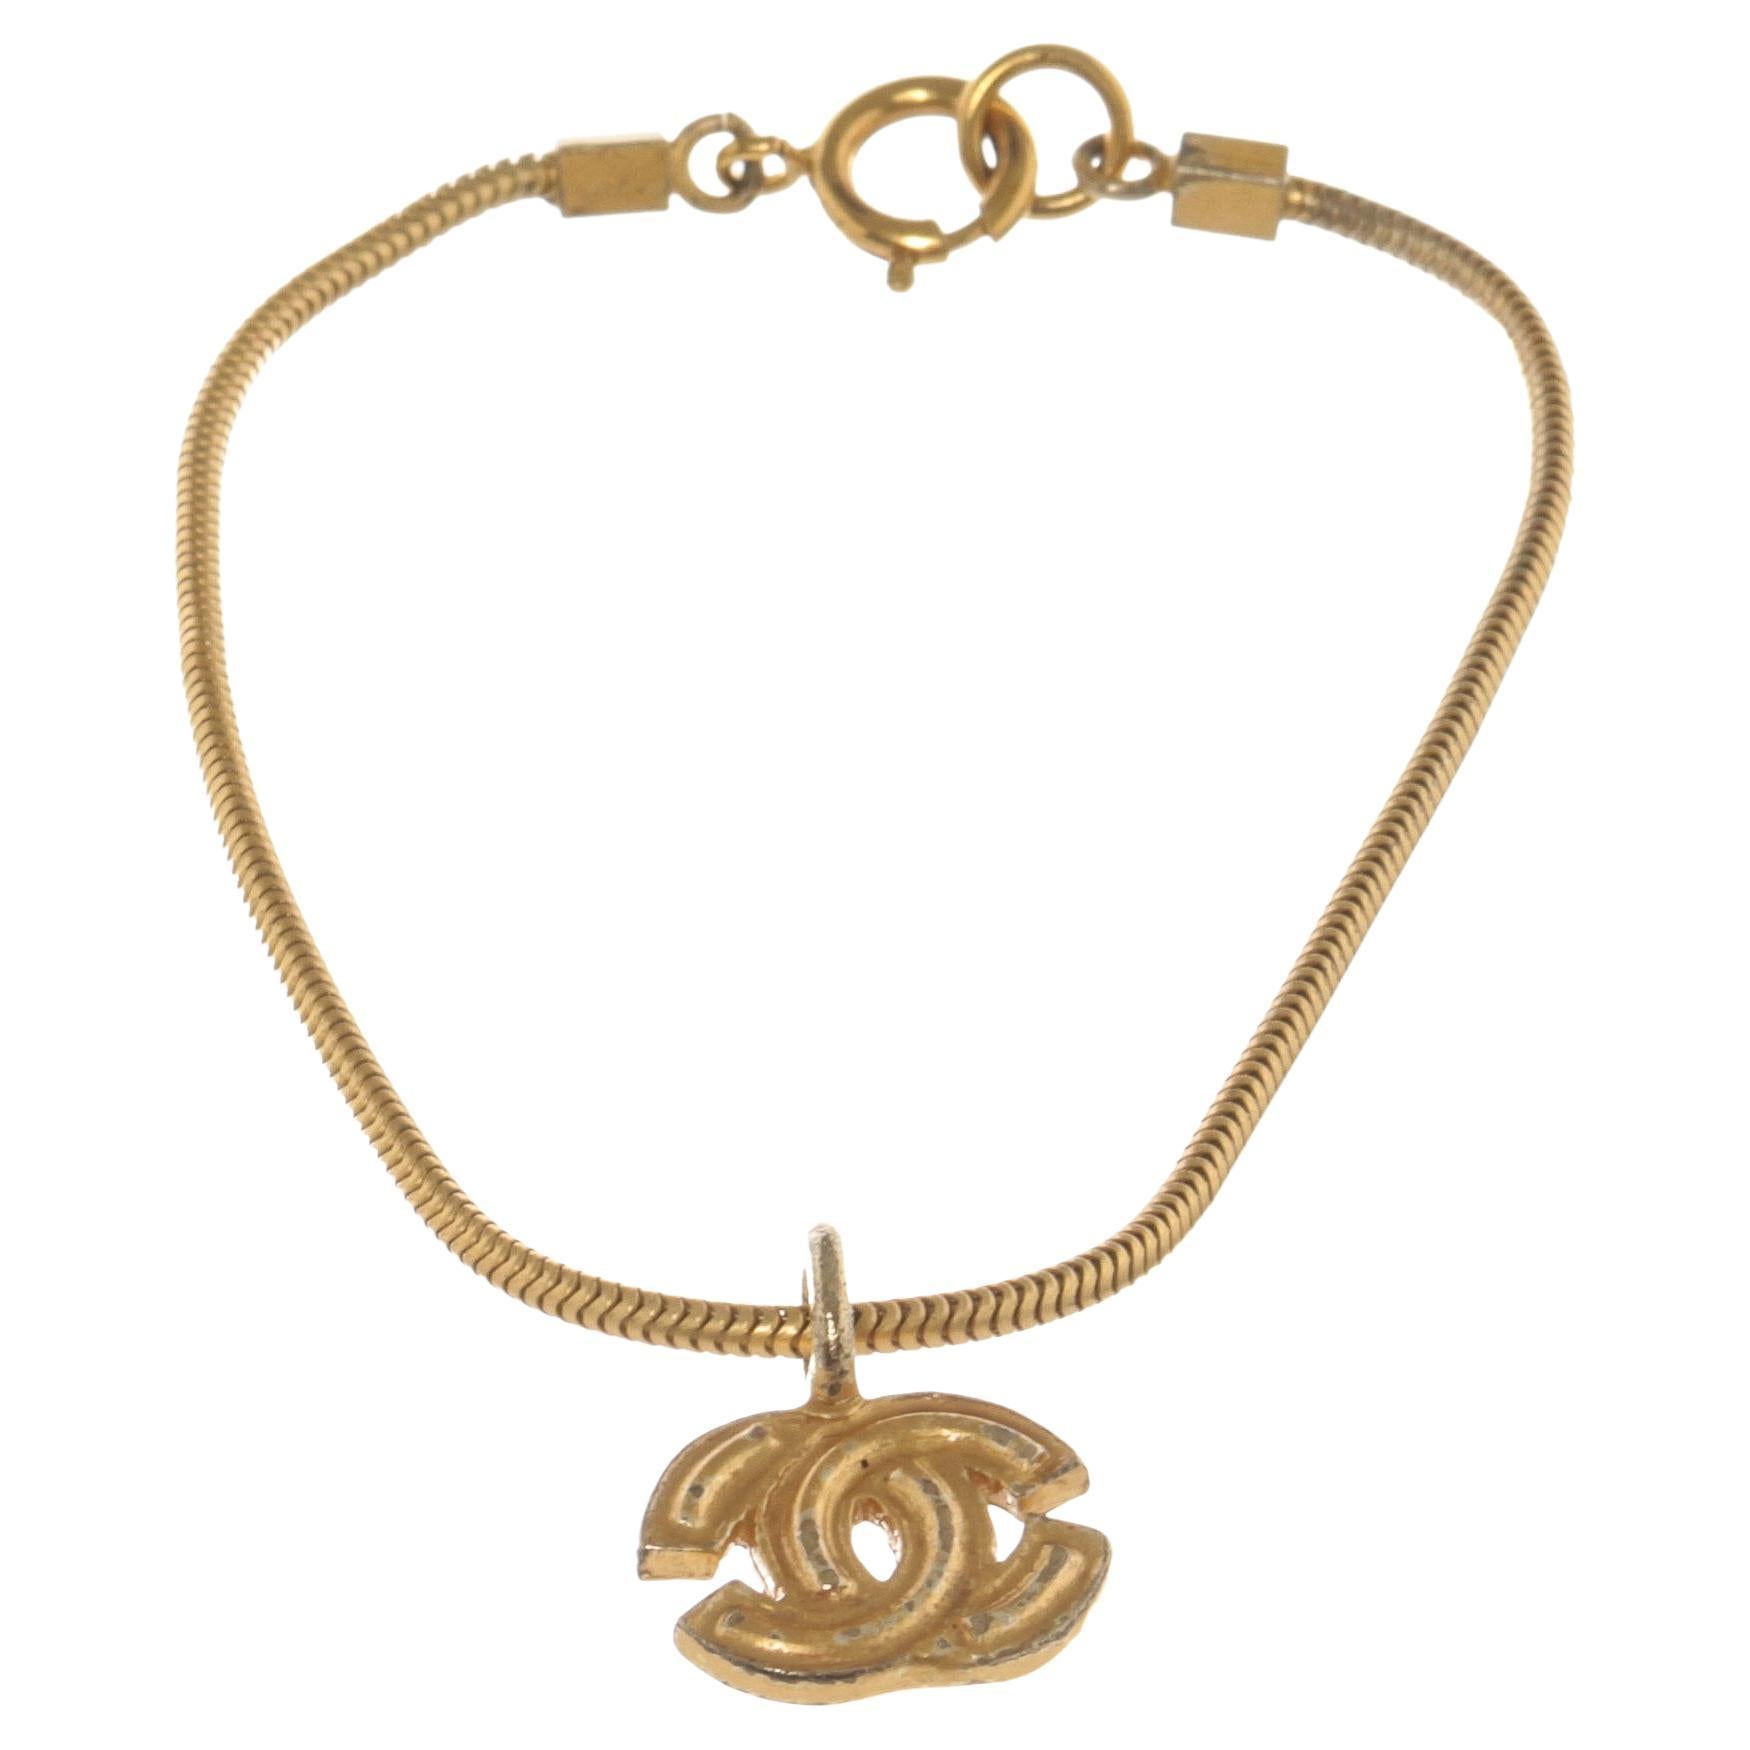 Bracelet avec logo CC de Chanel